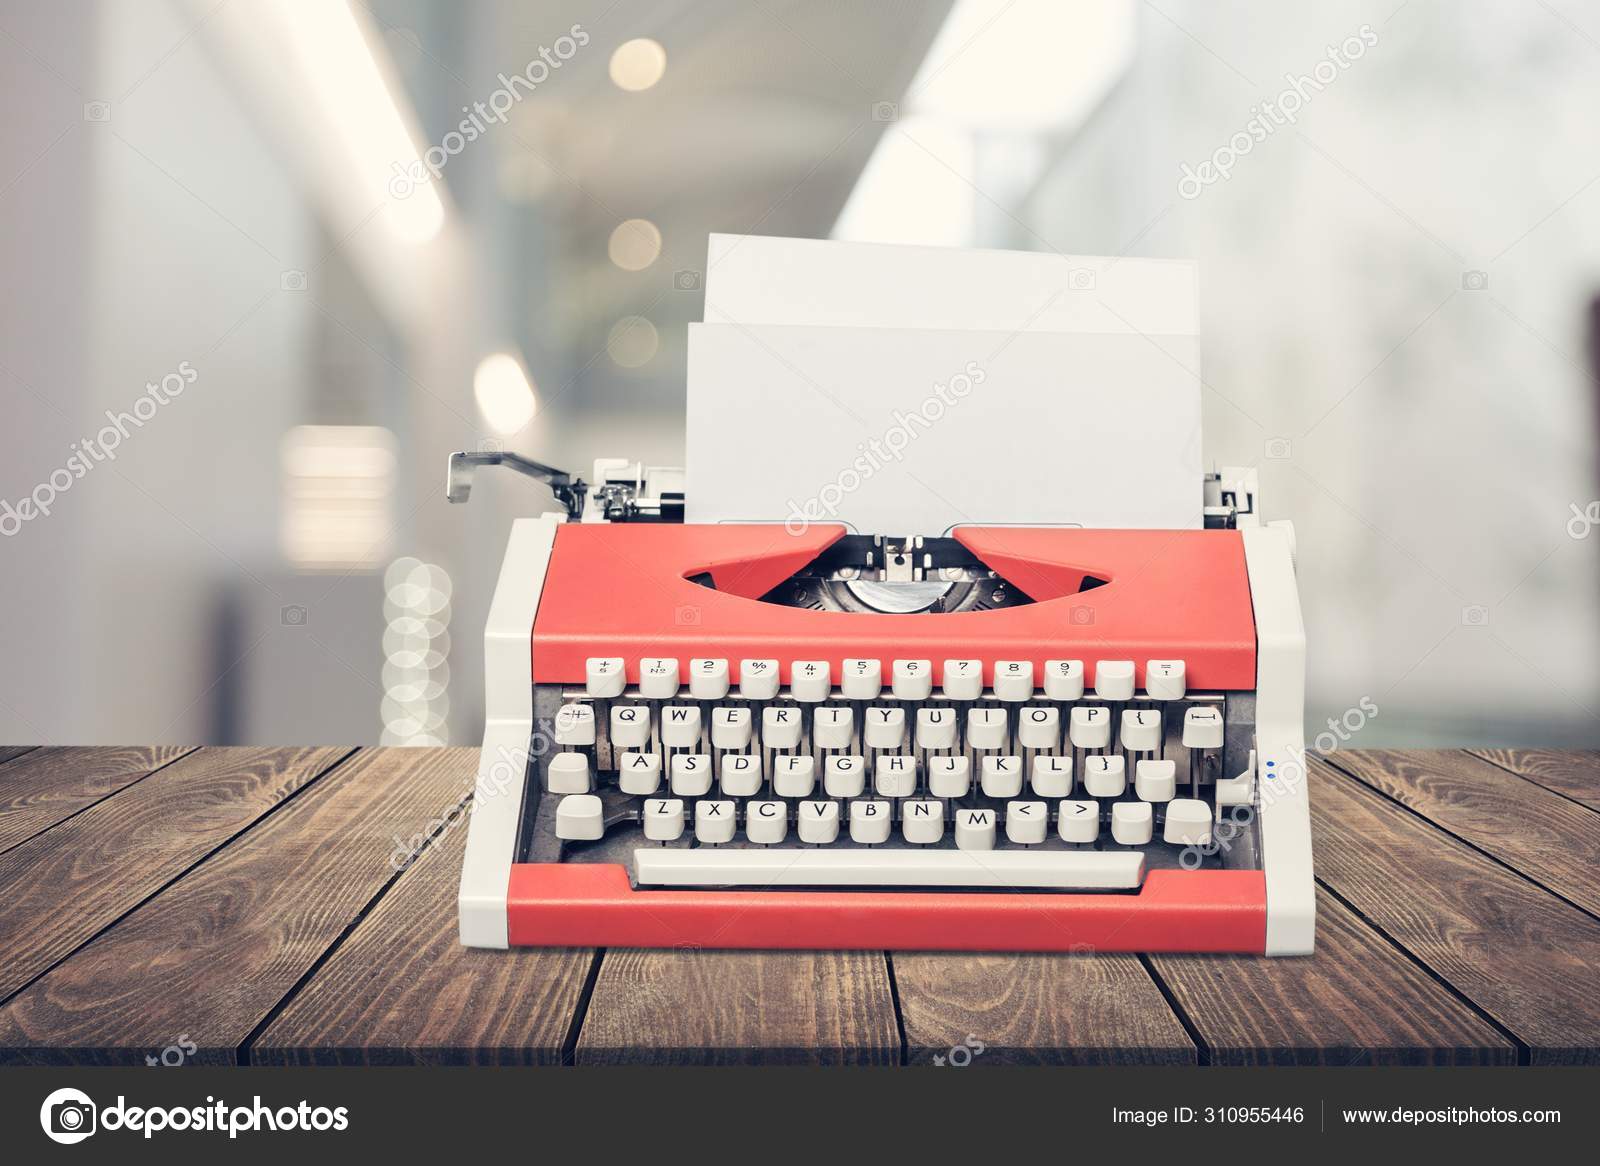 Typewriter Paper